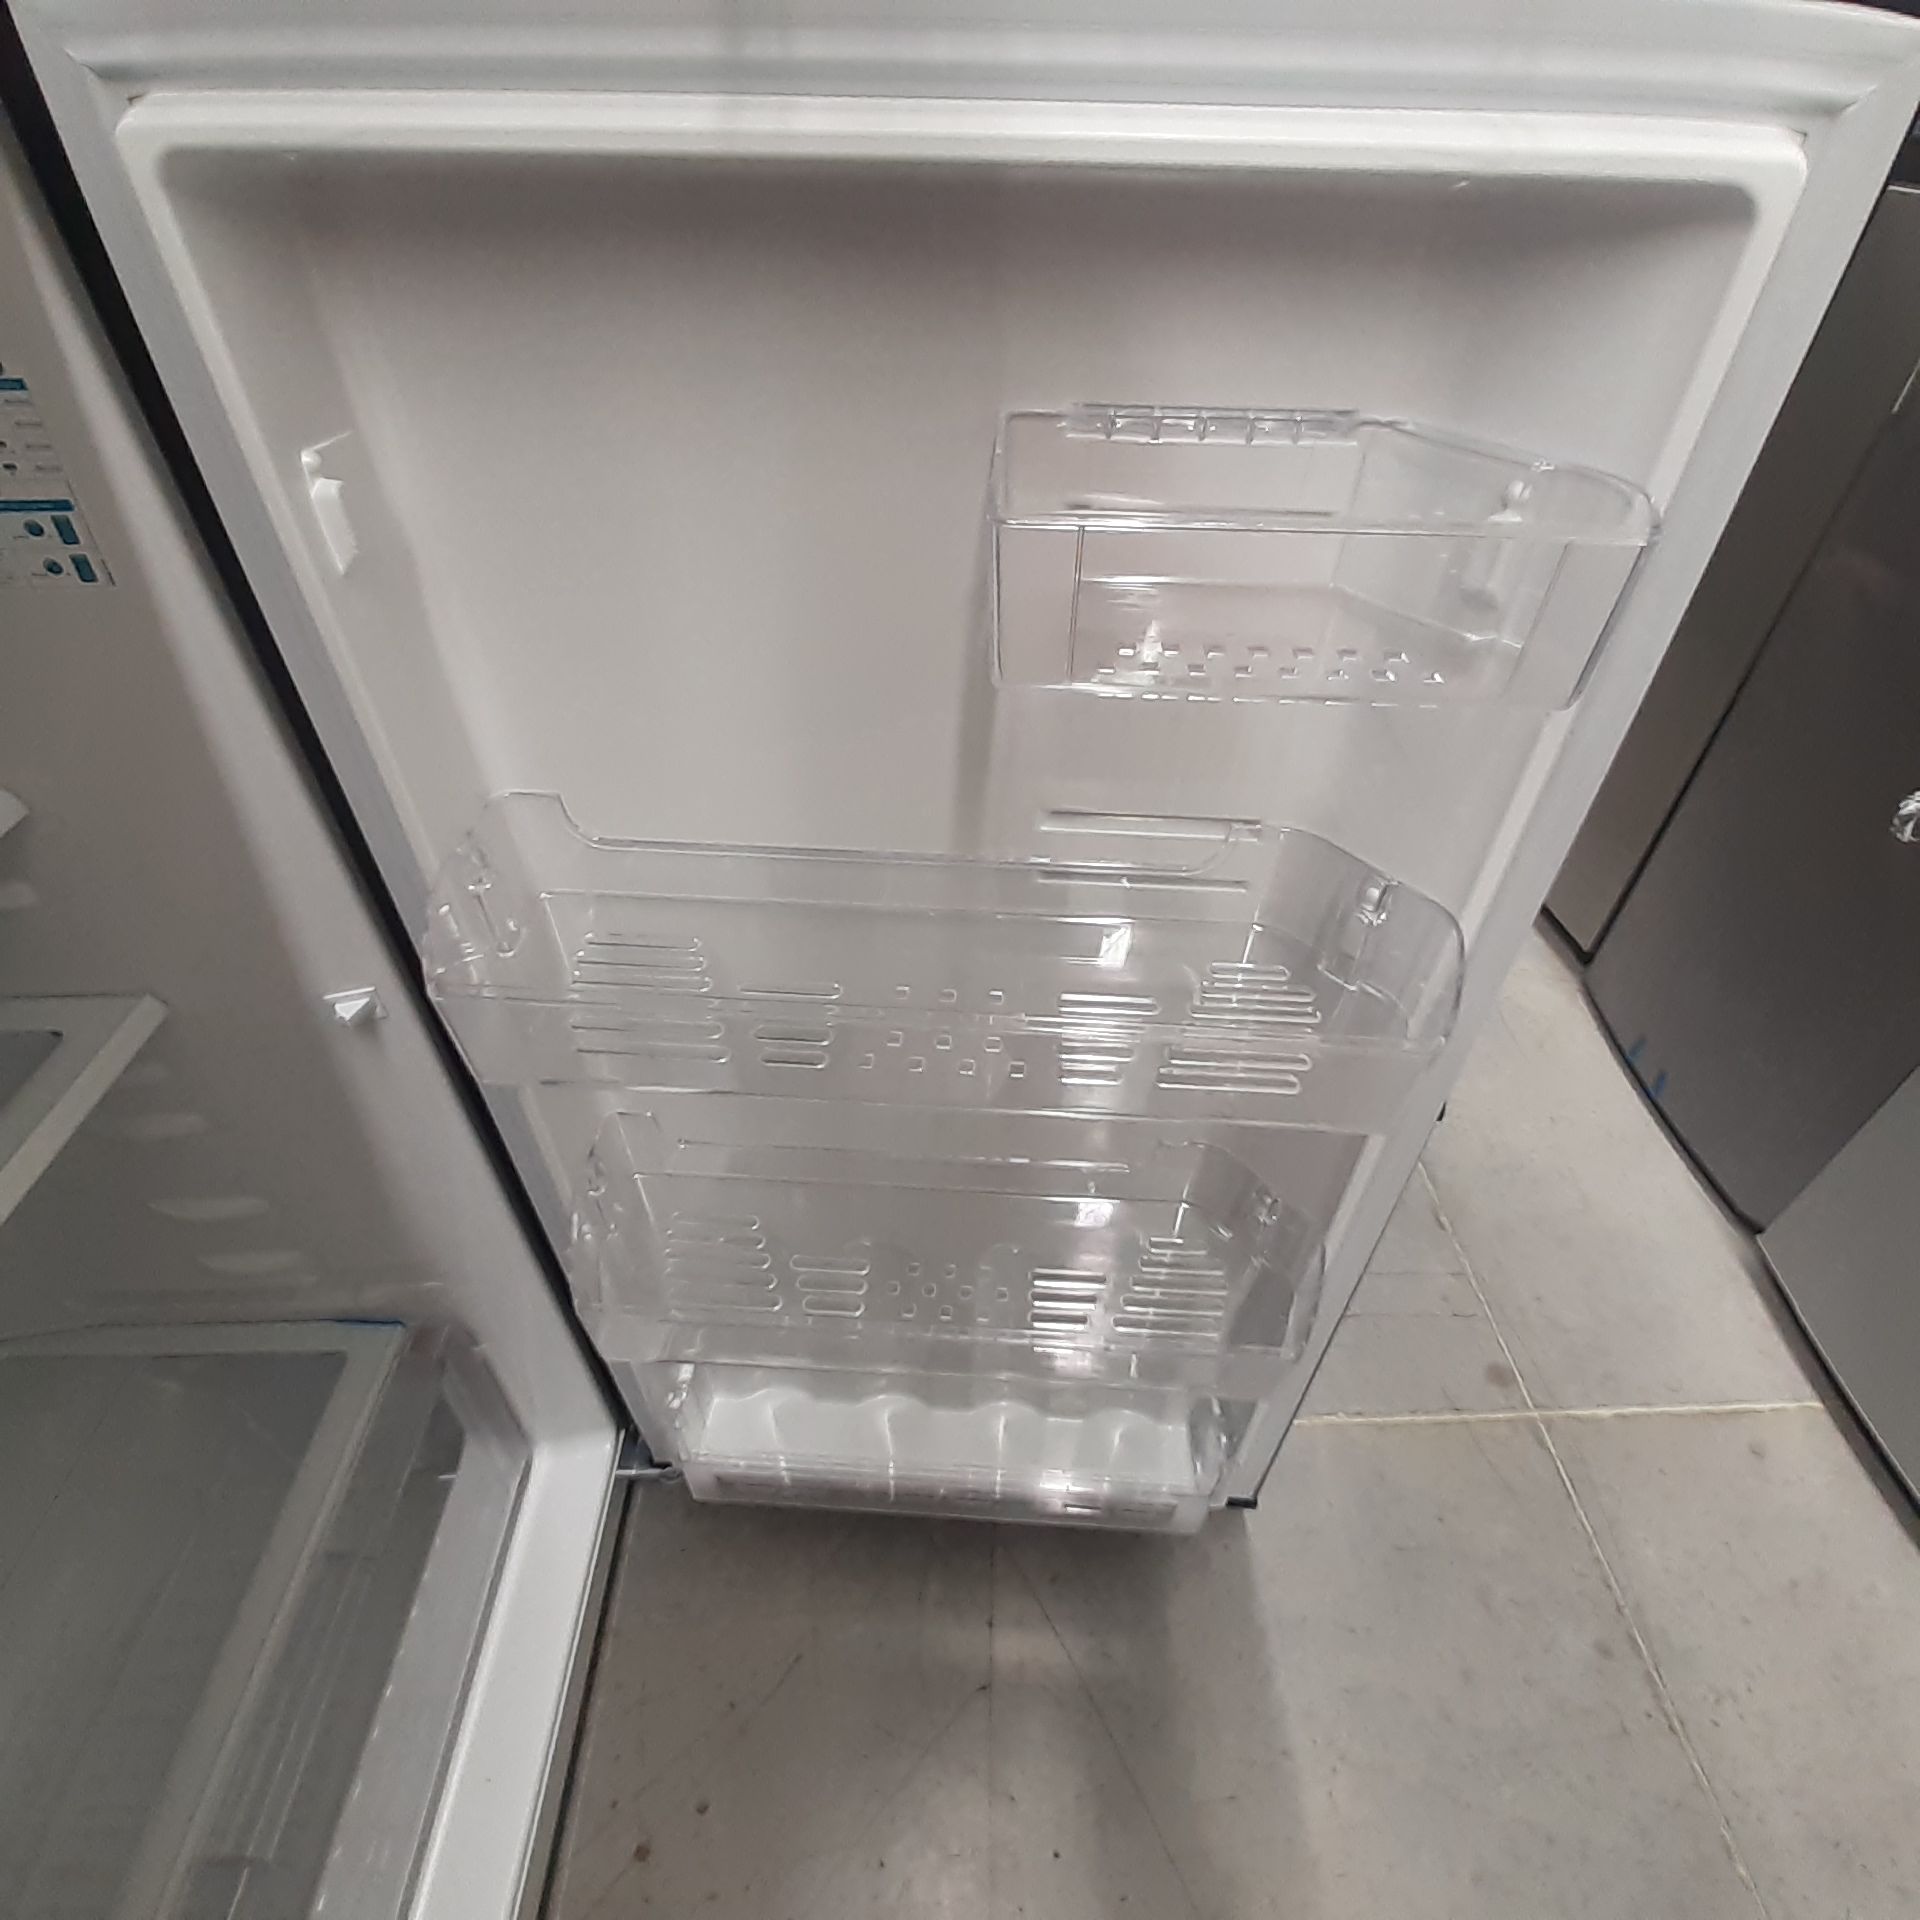 Lote De 2 Refrigeradores: 1 Refrigerador Marca Whirlpool, 1 Refrigerador Marca Mabe, Distintos Model - Image 14 of 22